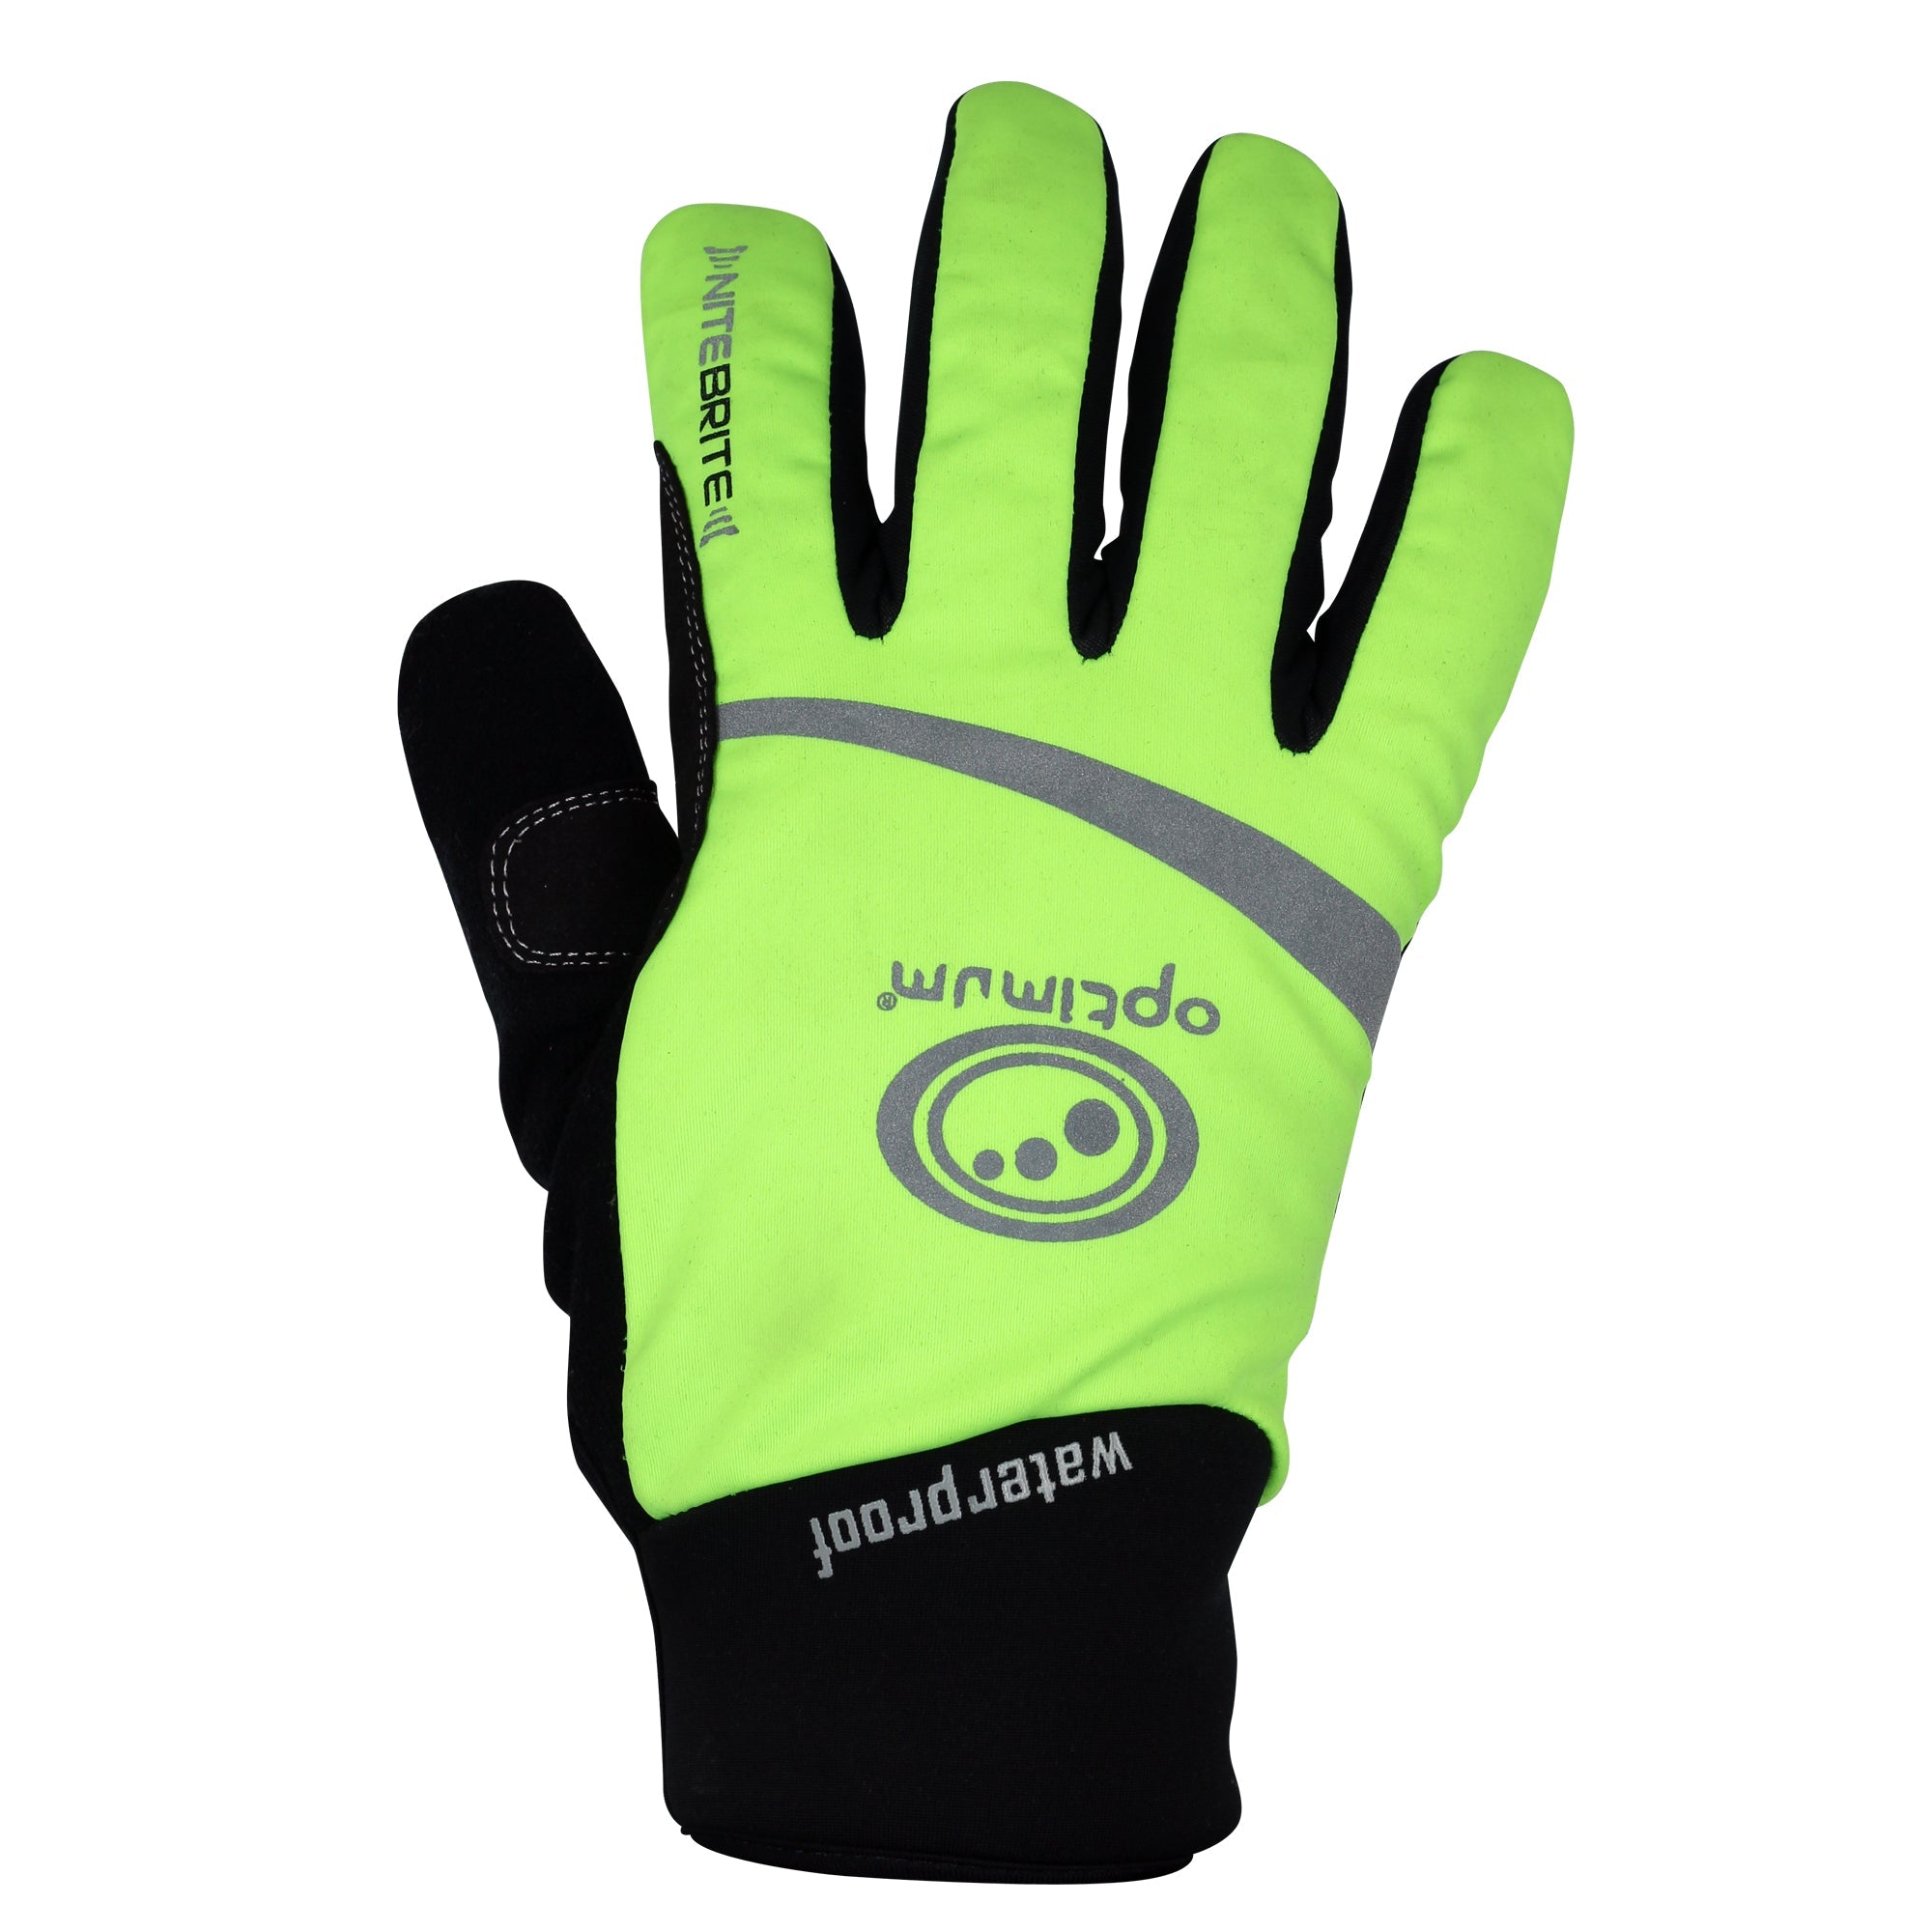 Nitebrite Waterproof Cycling Gloves - Optimum